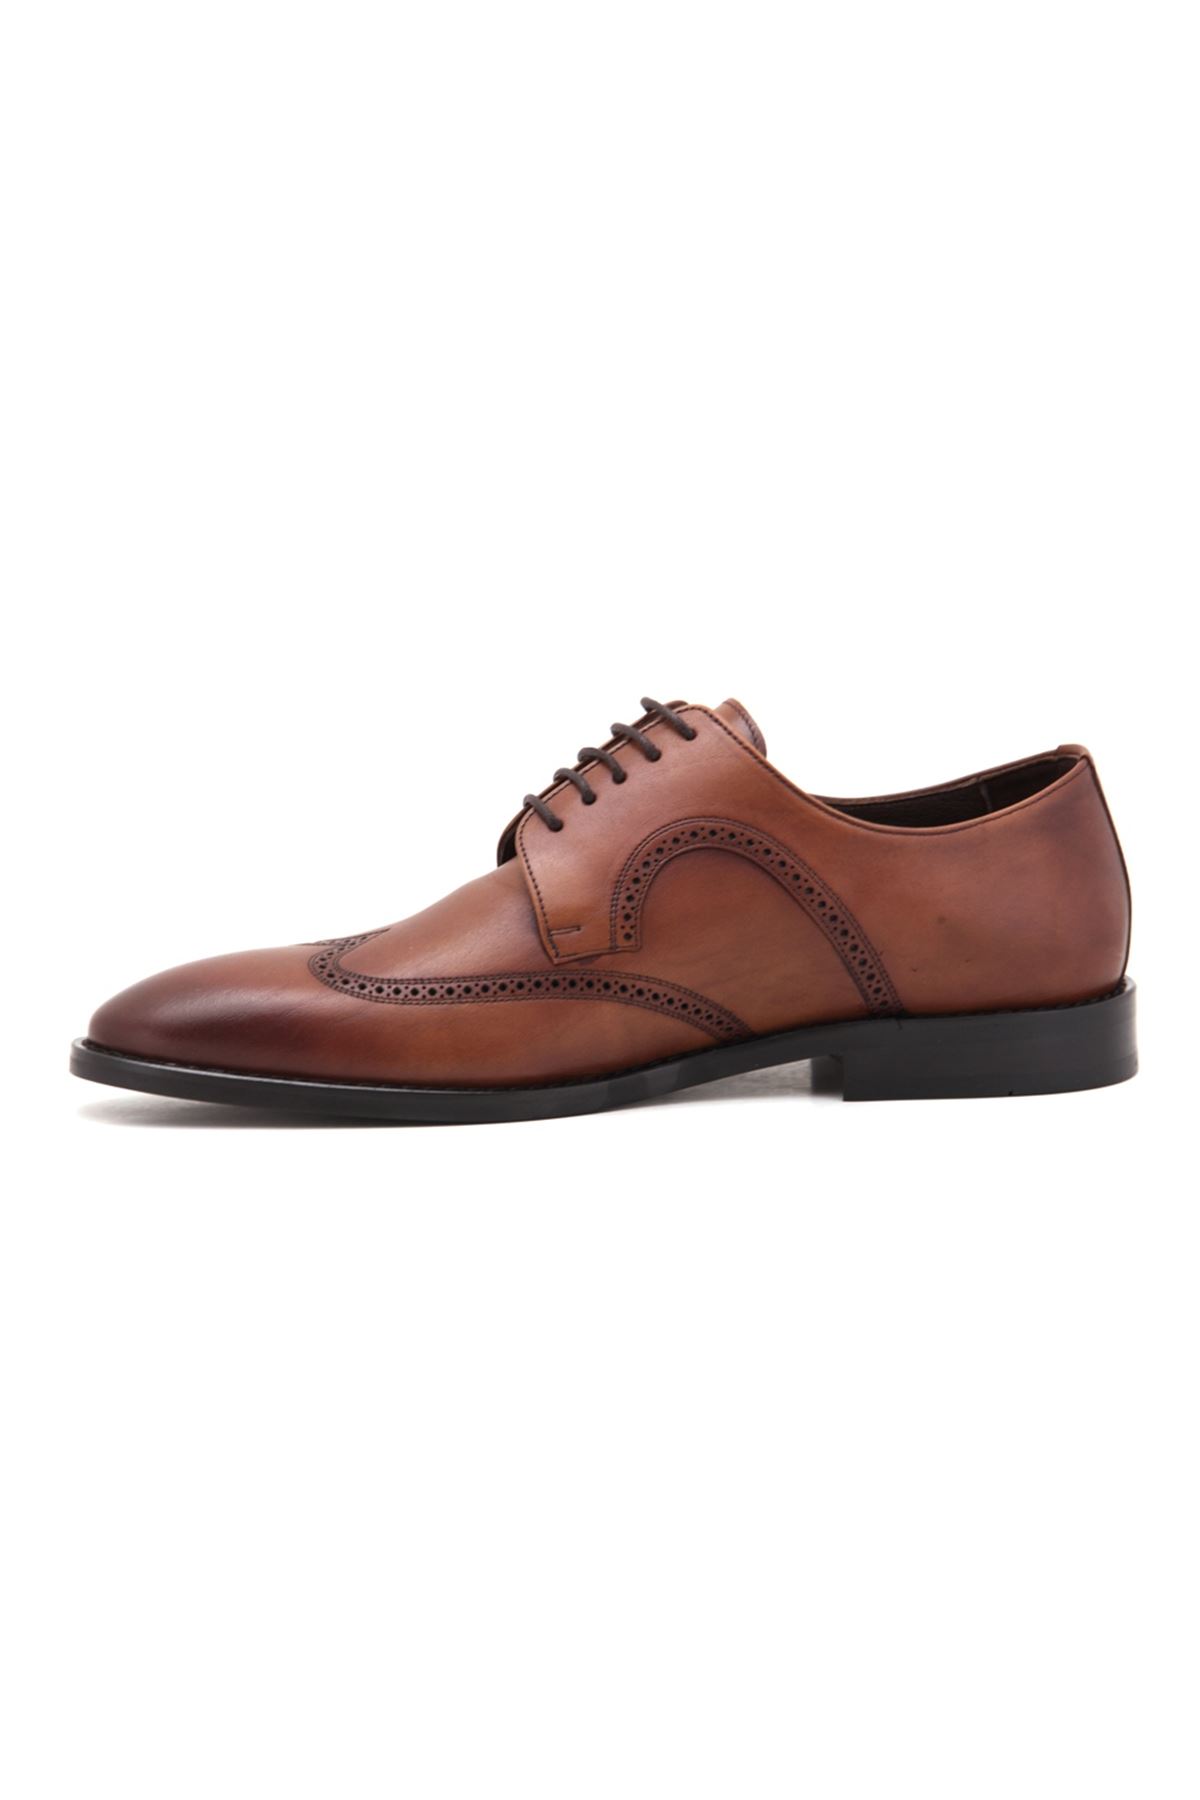 2721 Libero Klasik Erkek Ayakkabı - Taba